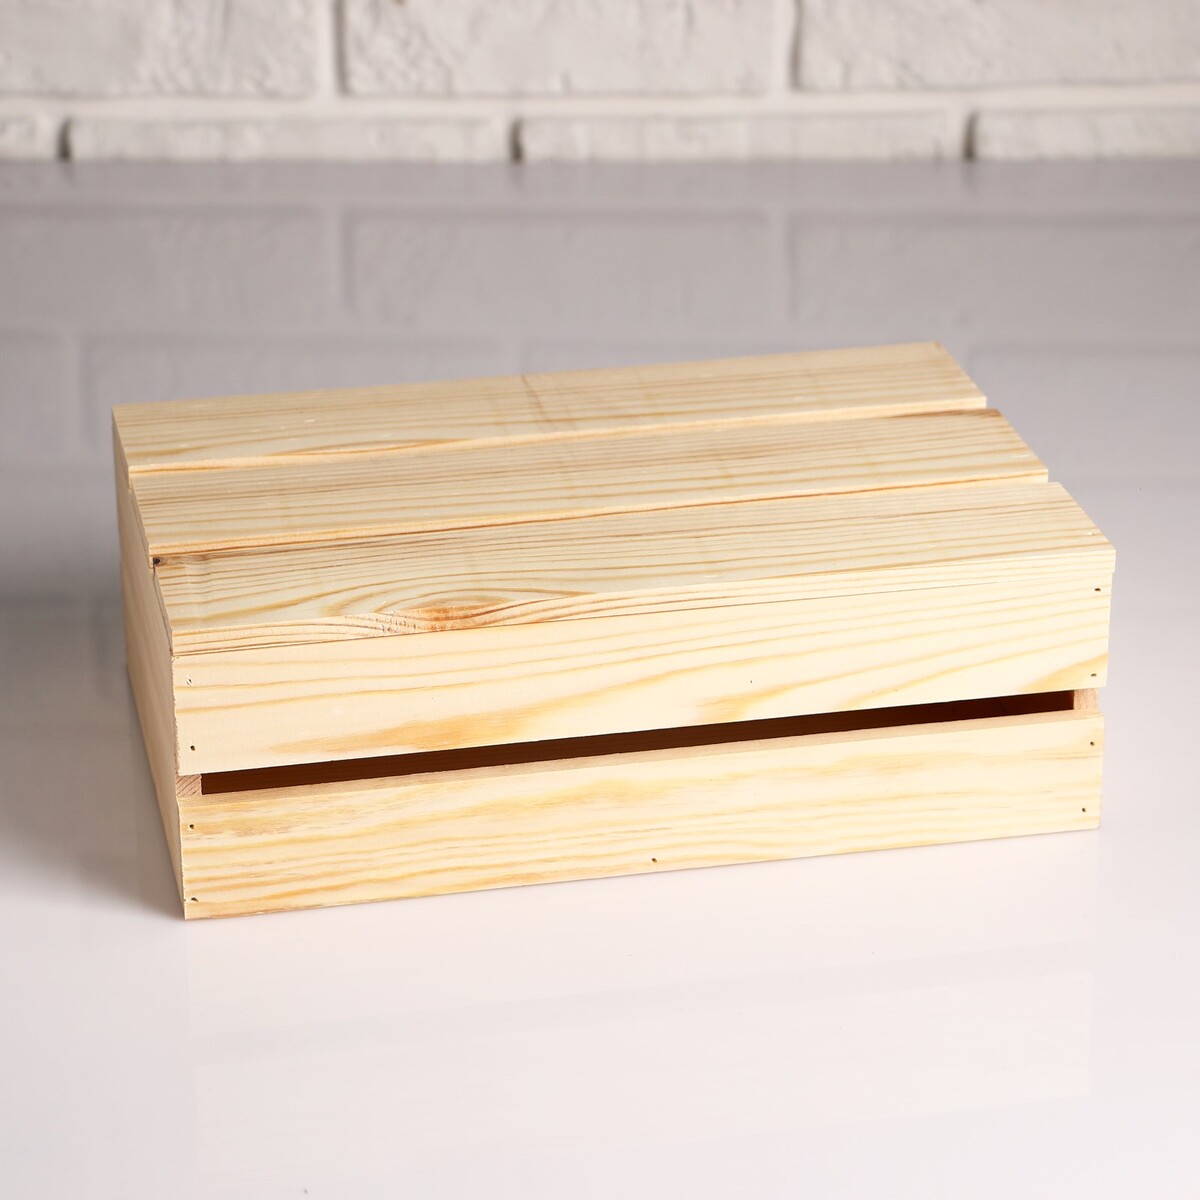 Ящик деревянный 30×20×10 см подарочный с реечной крышкой подарочный ящик 30×20×10 см деревянный с откидной крышкой с замком ручка дарим красиво